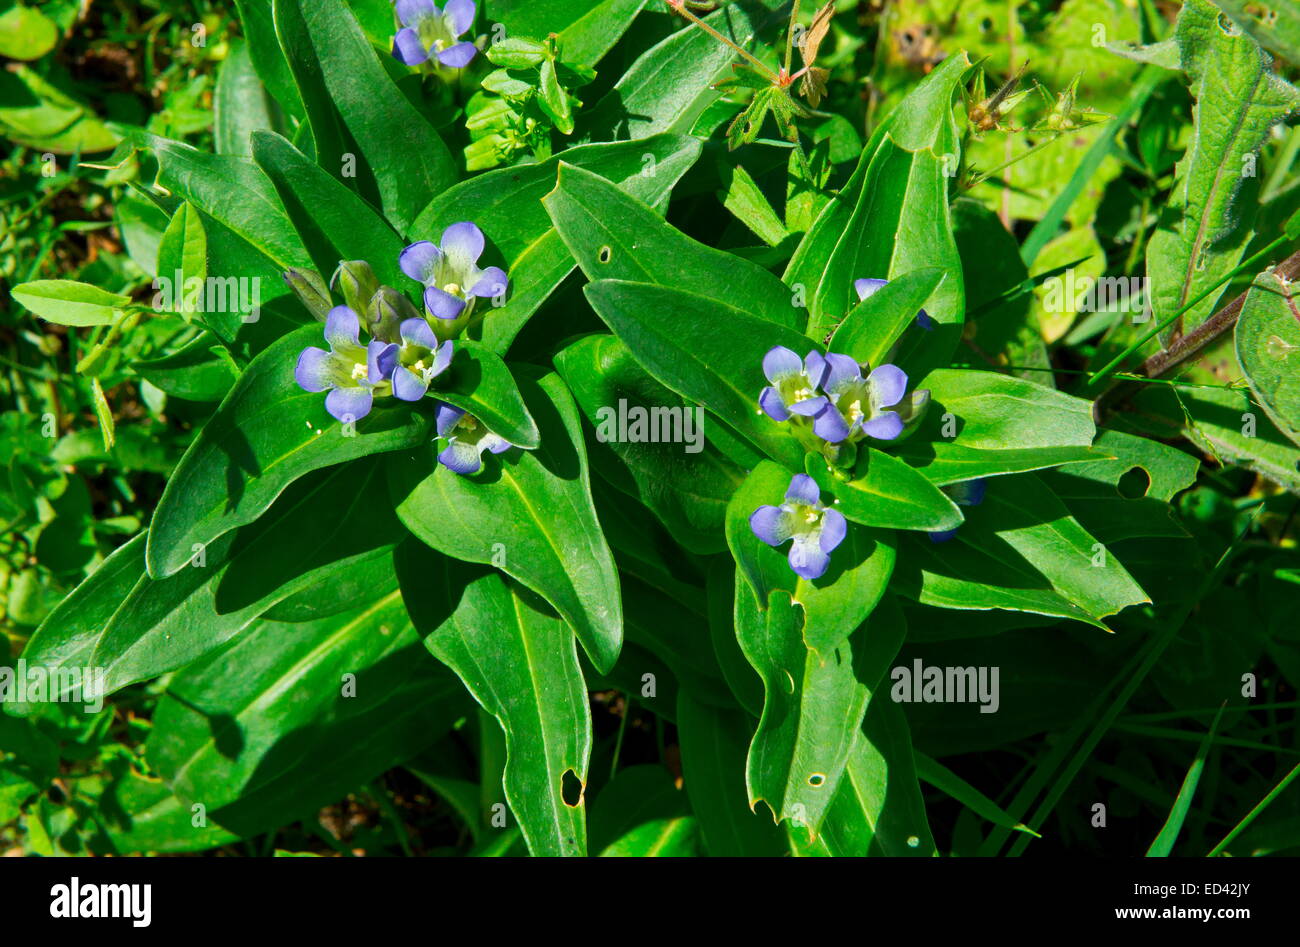 Kreuz Enzian Gentiana Cruciata in Blüte, mit Eiern von Berg Alcon blauer Schmetterling auf sie verstreut. Stockfoto